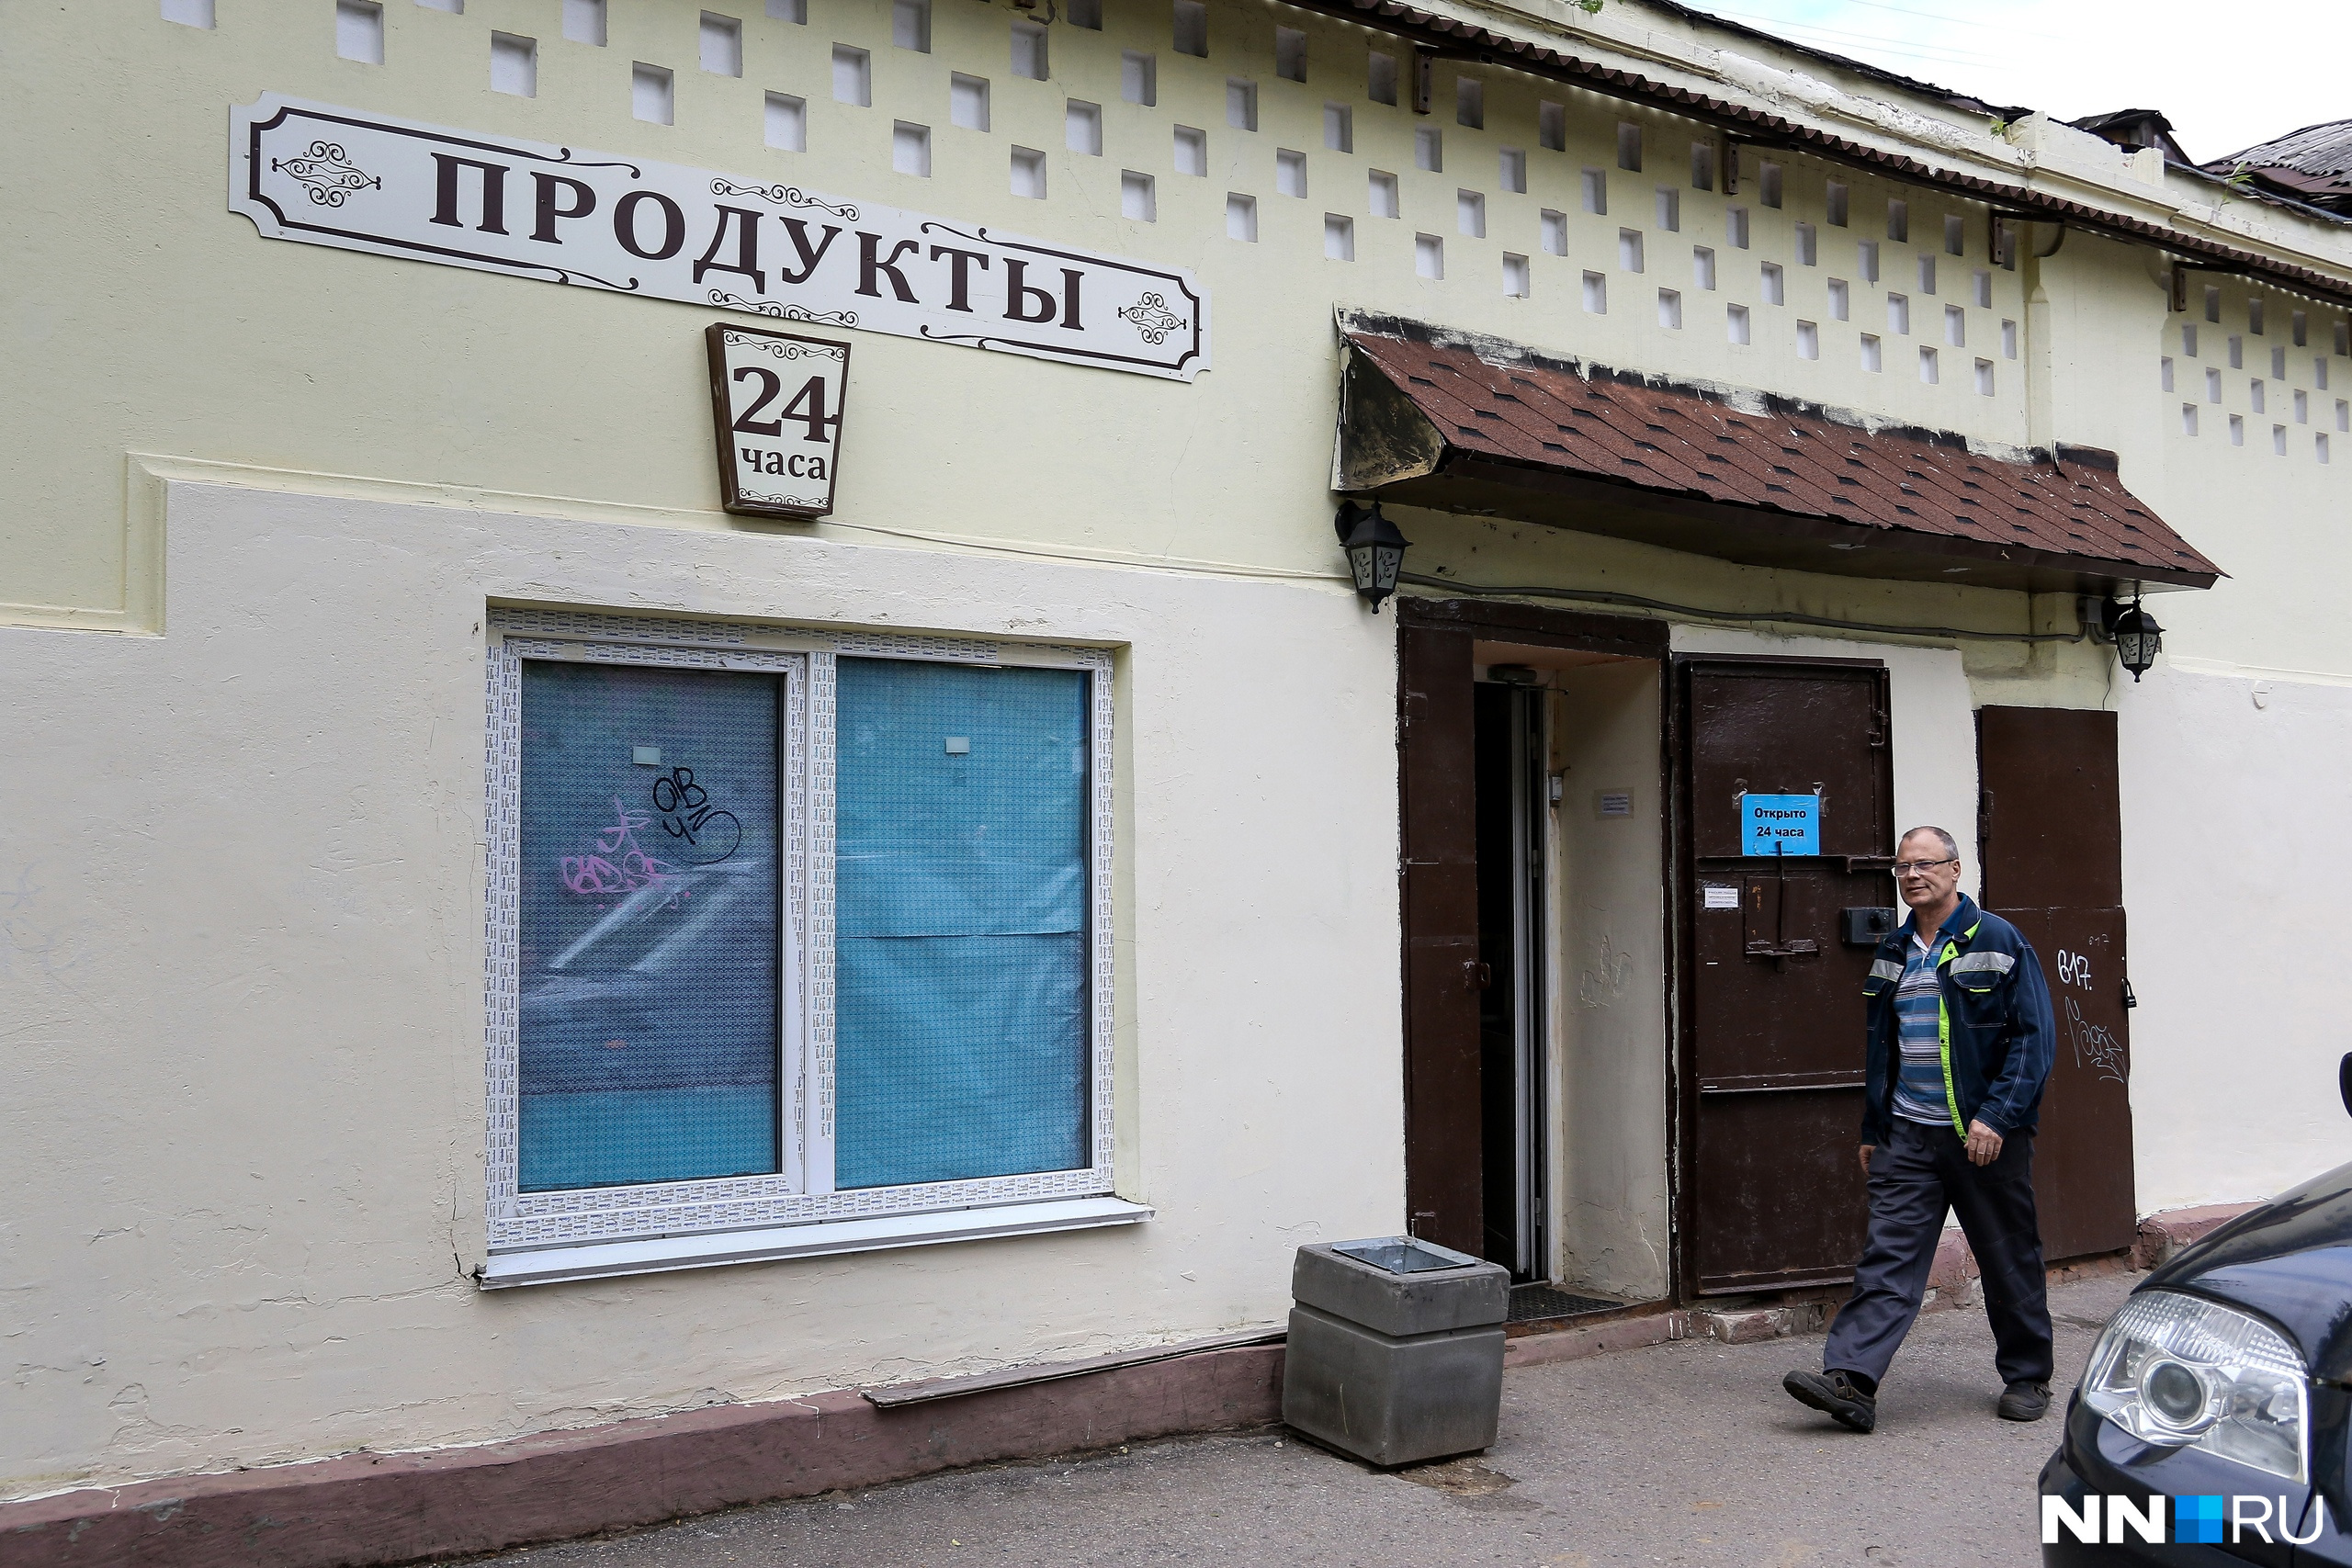 Магазин «Продукты» находится в минуте ходьбы от дома, где живут Василенковы